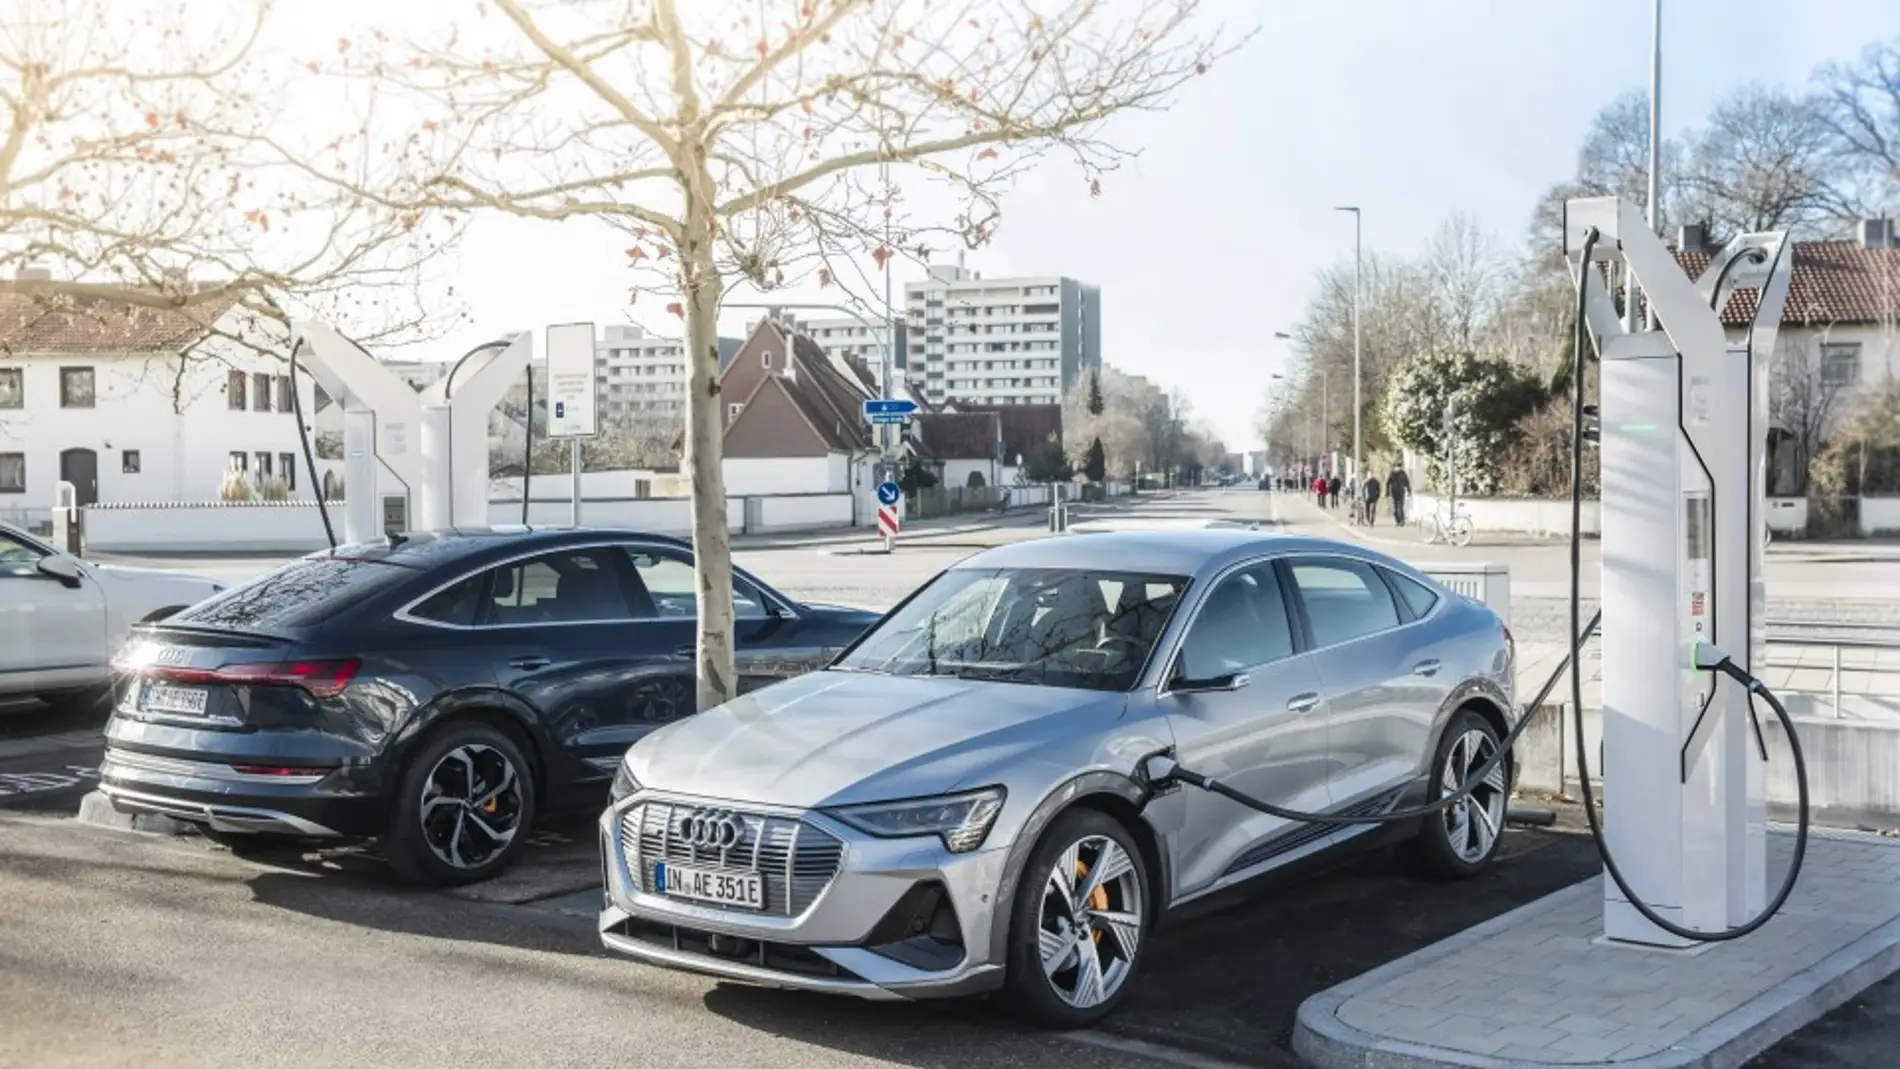 Audi construirá más de 4.500 puntos de recarga en sus aparcamientos